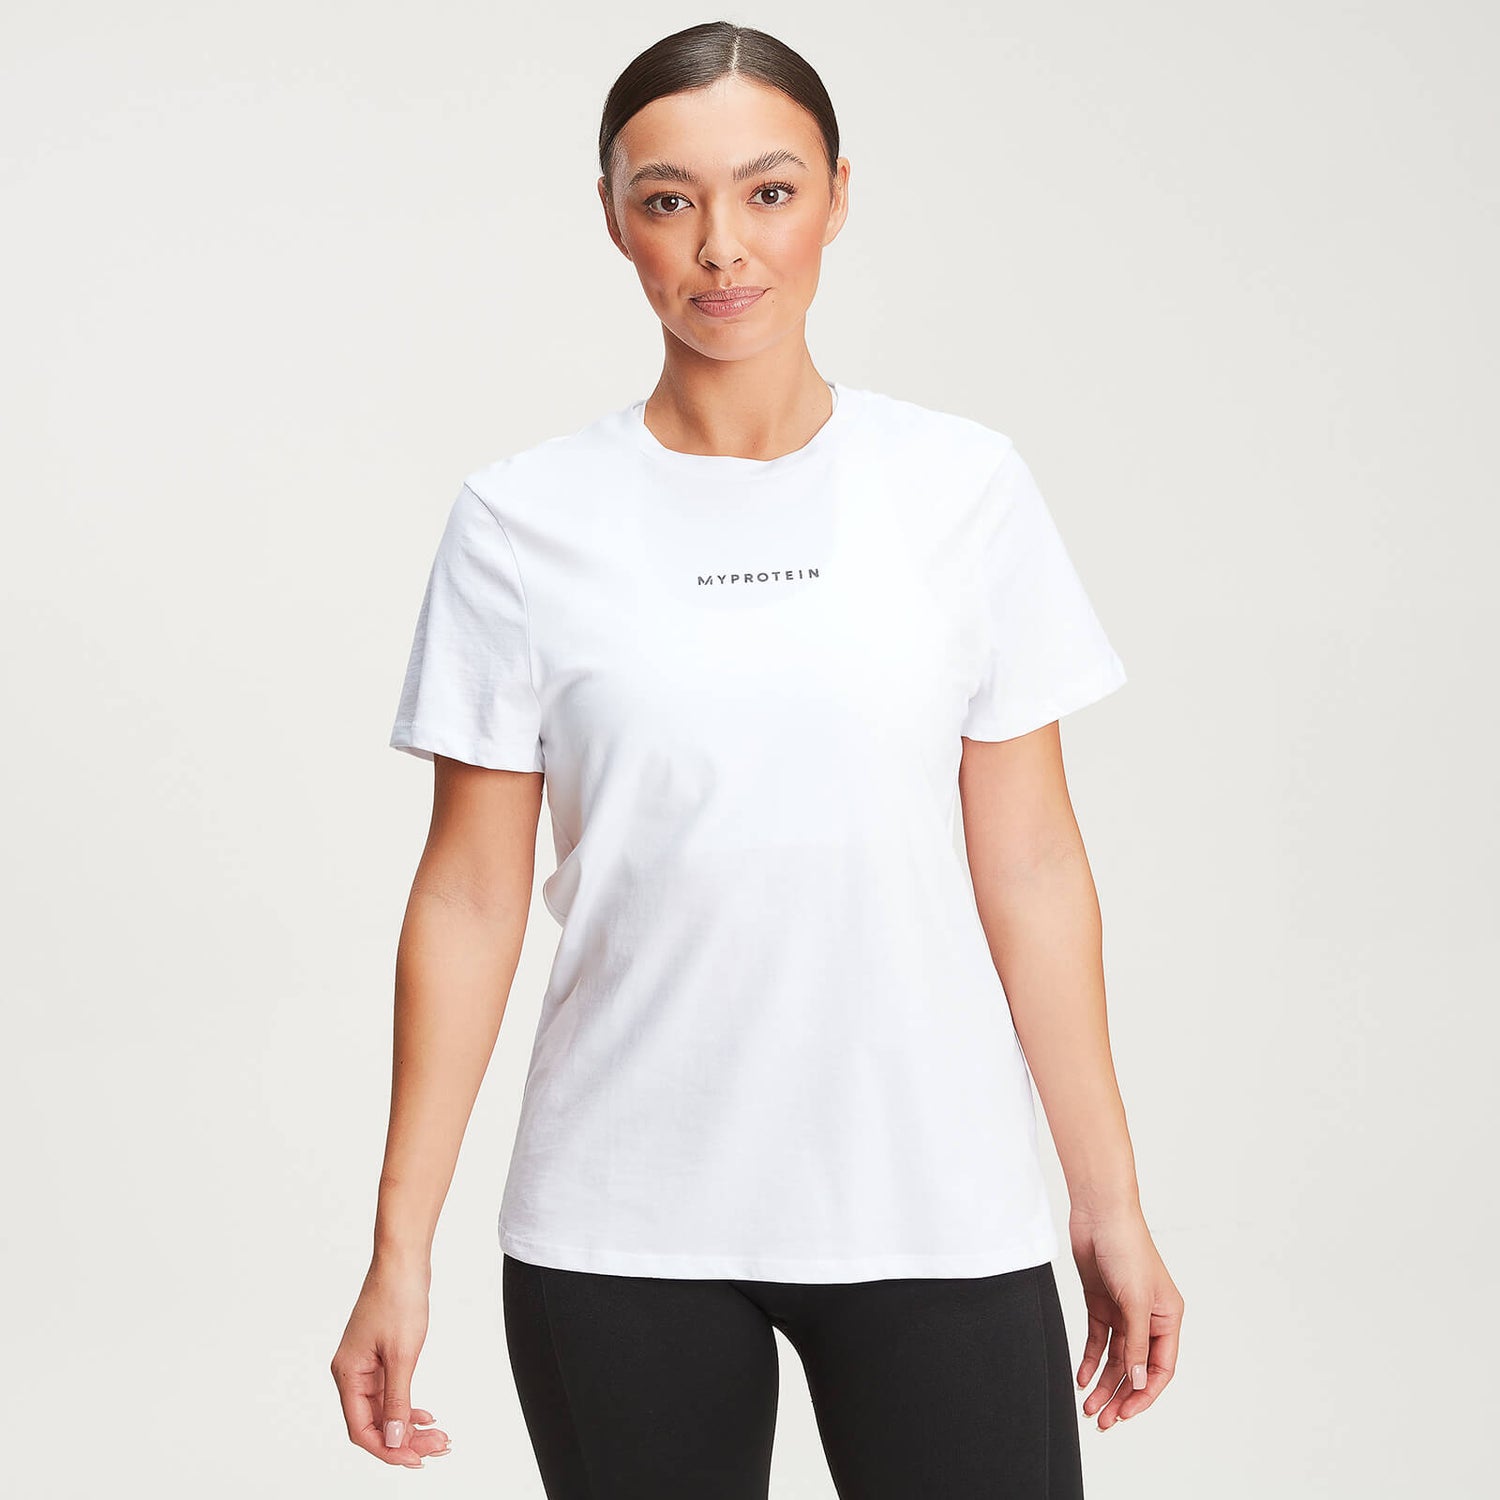 Dámské nové Original Moderní tričko - Bílé - XS